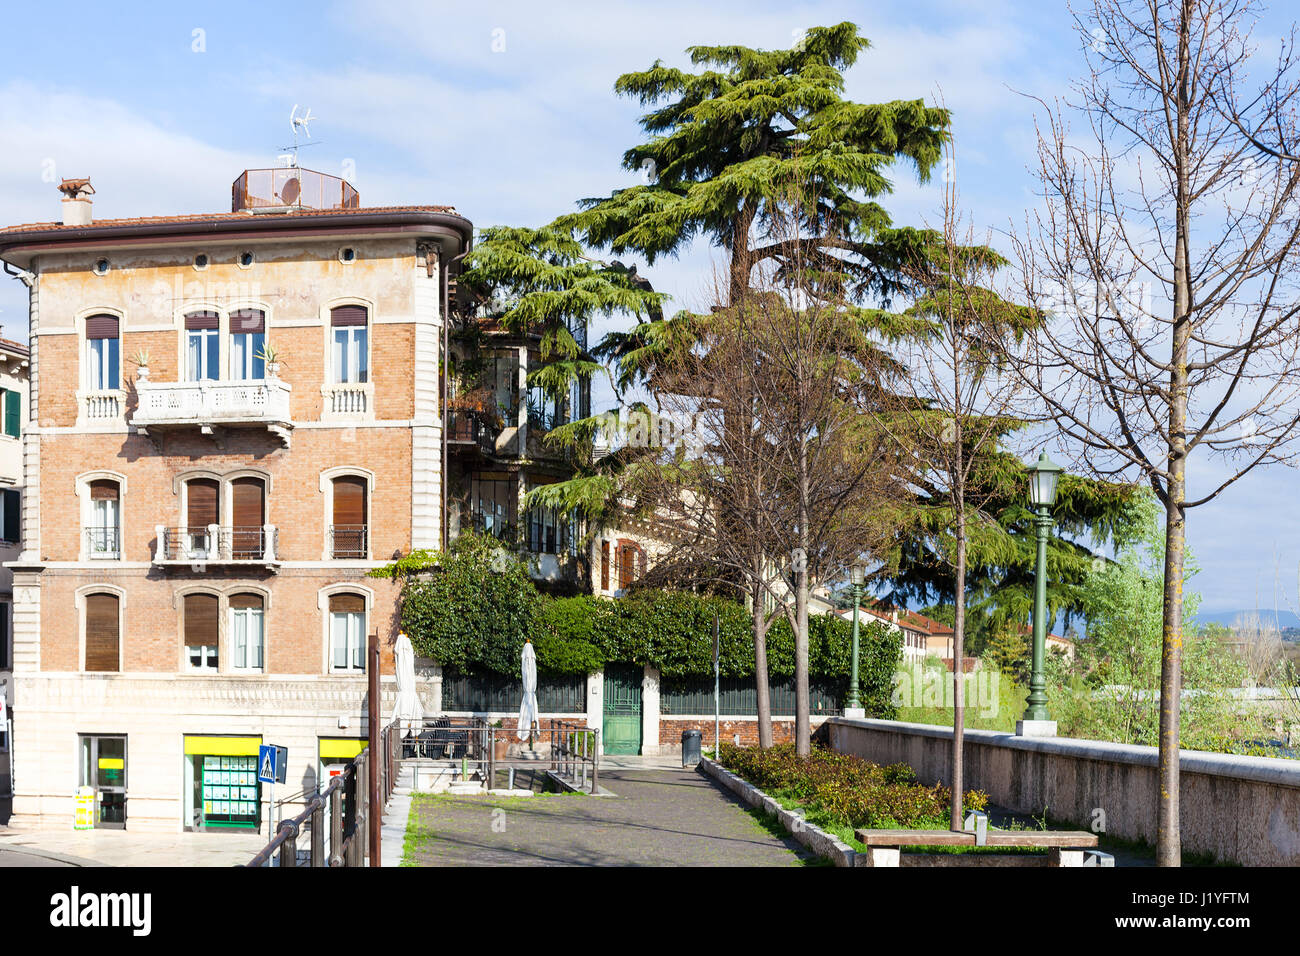 Voyage d'Italie - quartier résidentiel dans la ville de Vérone au printemps Banque D'Images